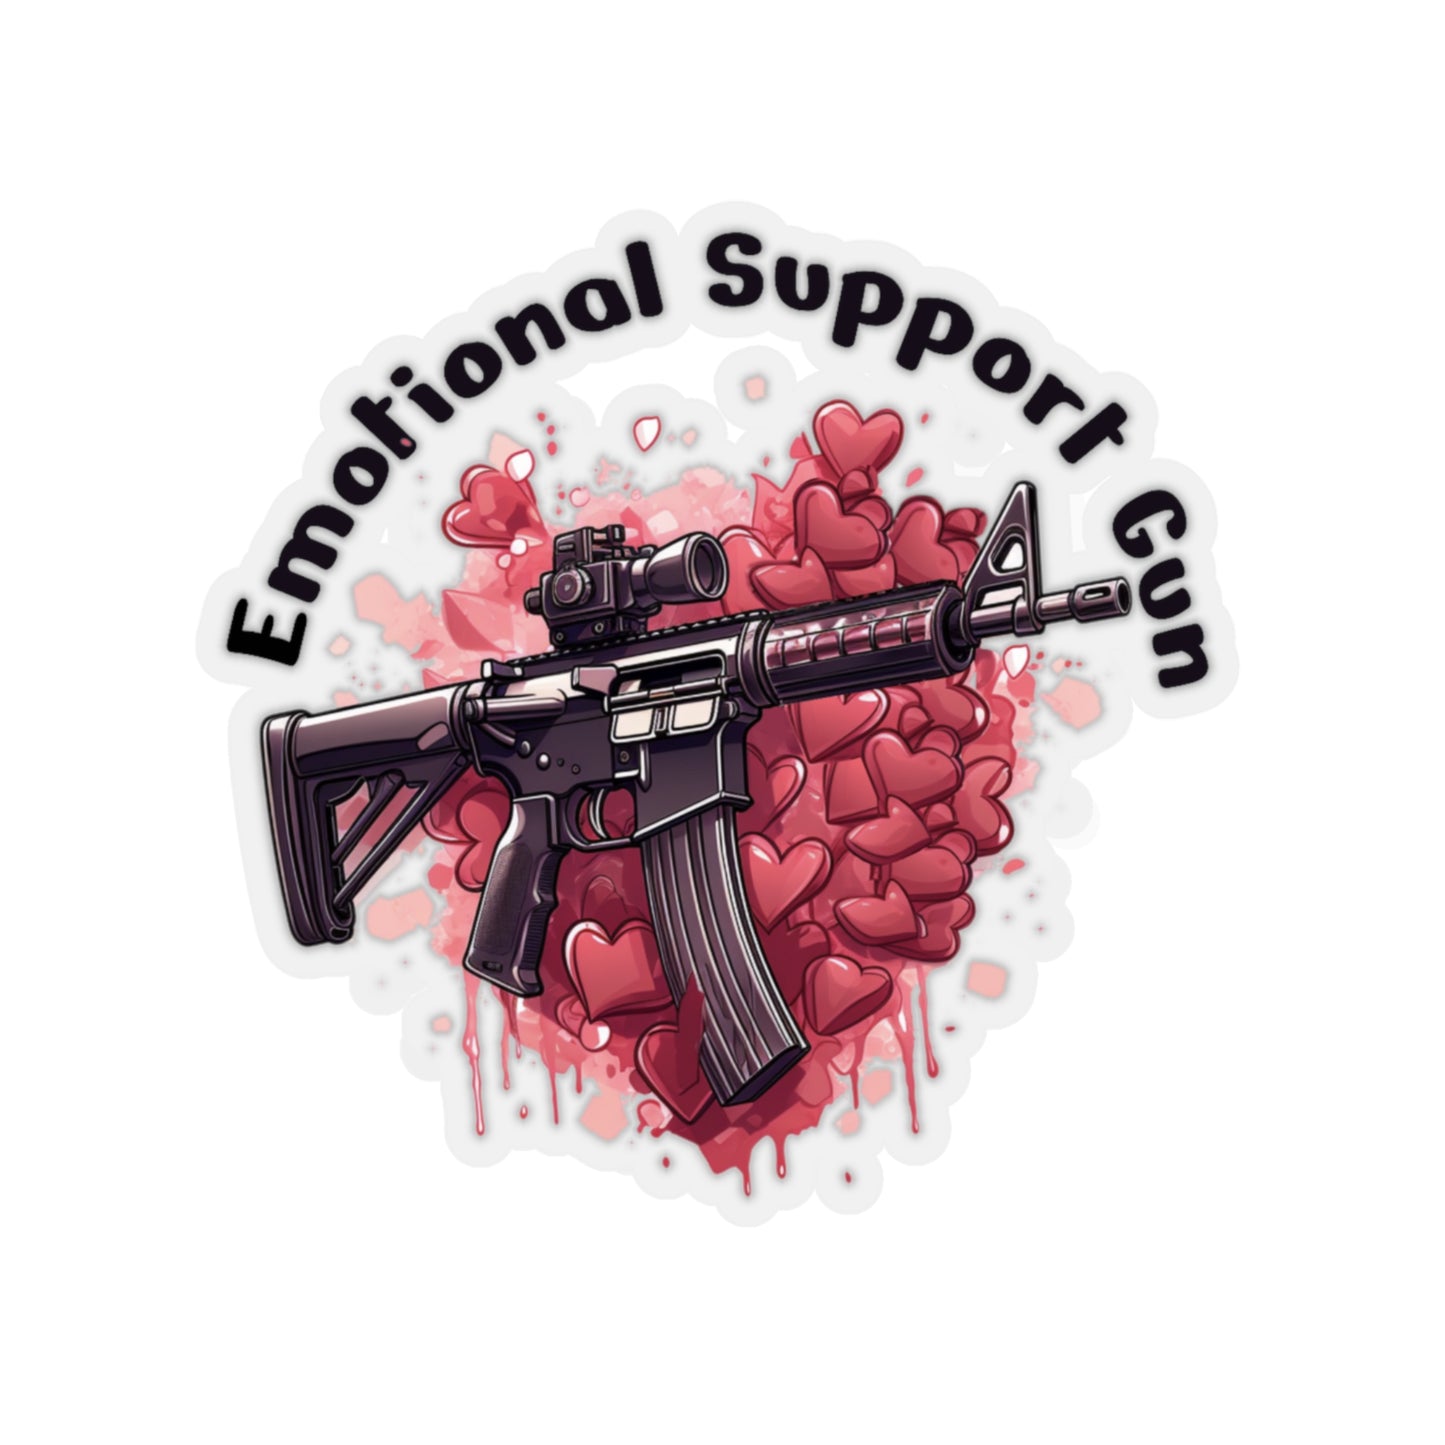 IJ Tactical Emotional Support Gun sticker